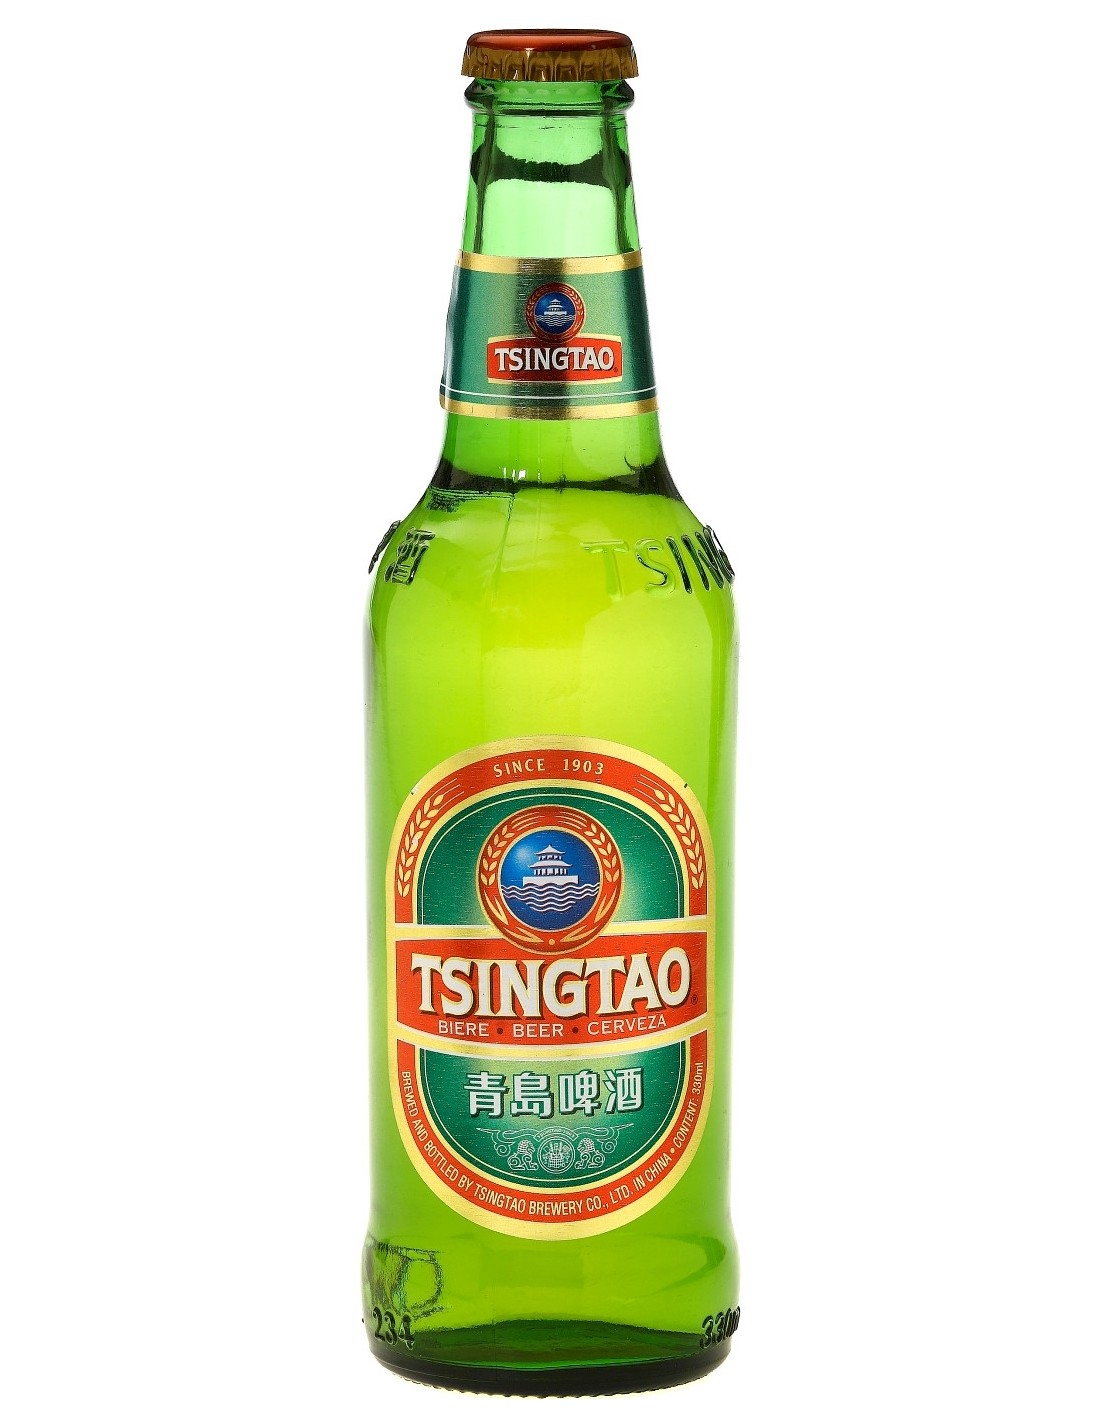 Bere blonda, filtrata Tsingtao, 4.7% alc., 0.33L, China alcooldiscount.ro